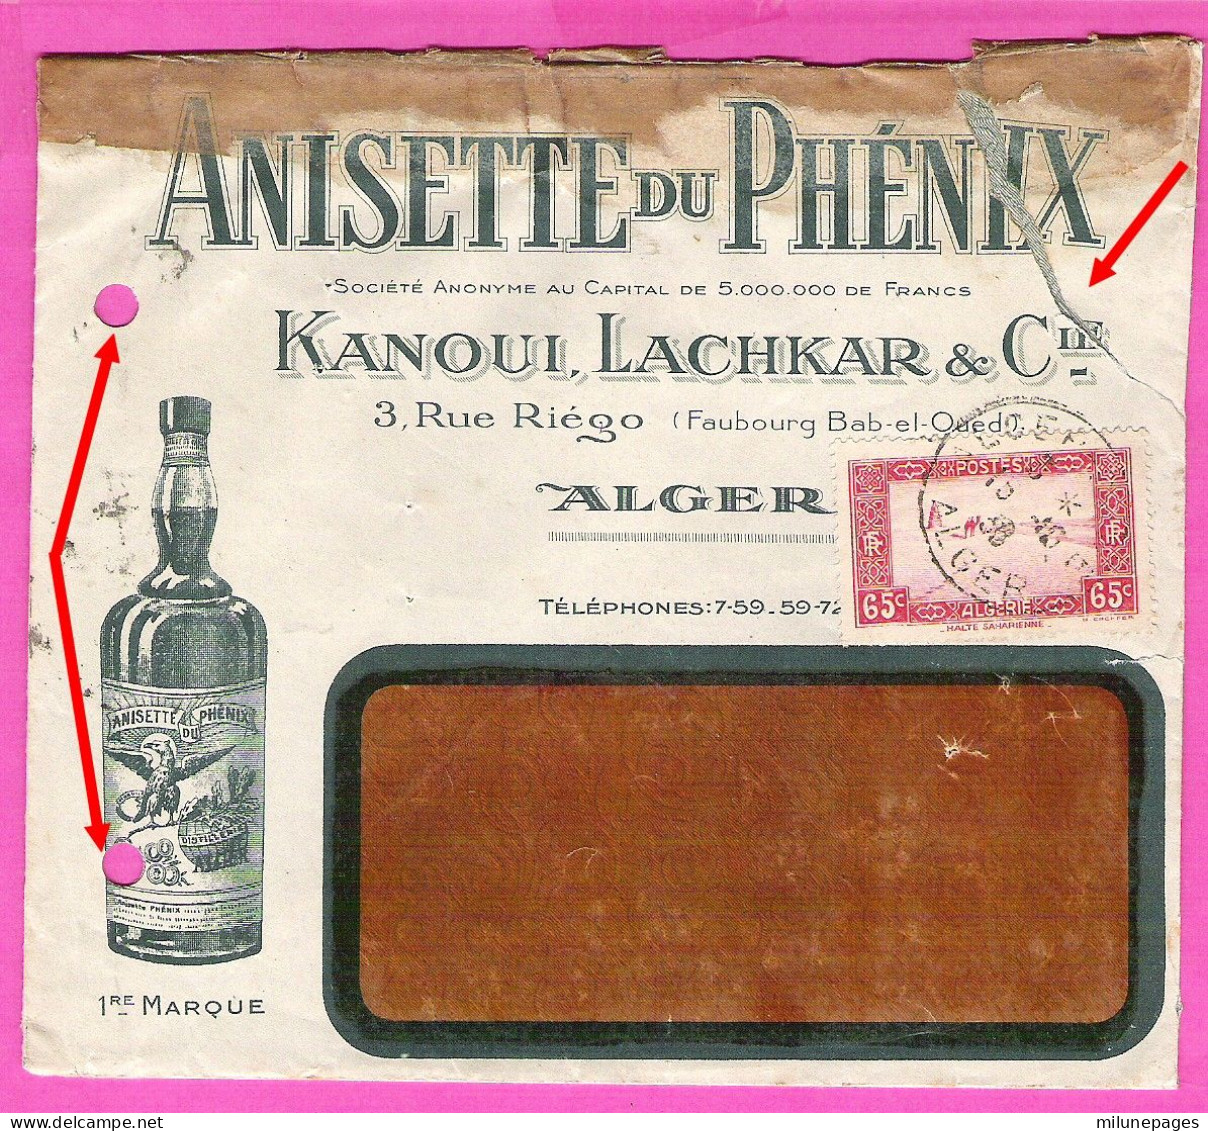 Enveloppe Illustrée Pour L'Anisette Du Phénix Kanoui, Lachkar & Cie à Alger En 1936 - Lebensmittel